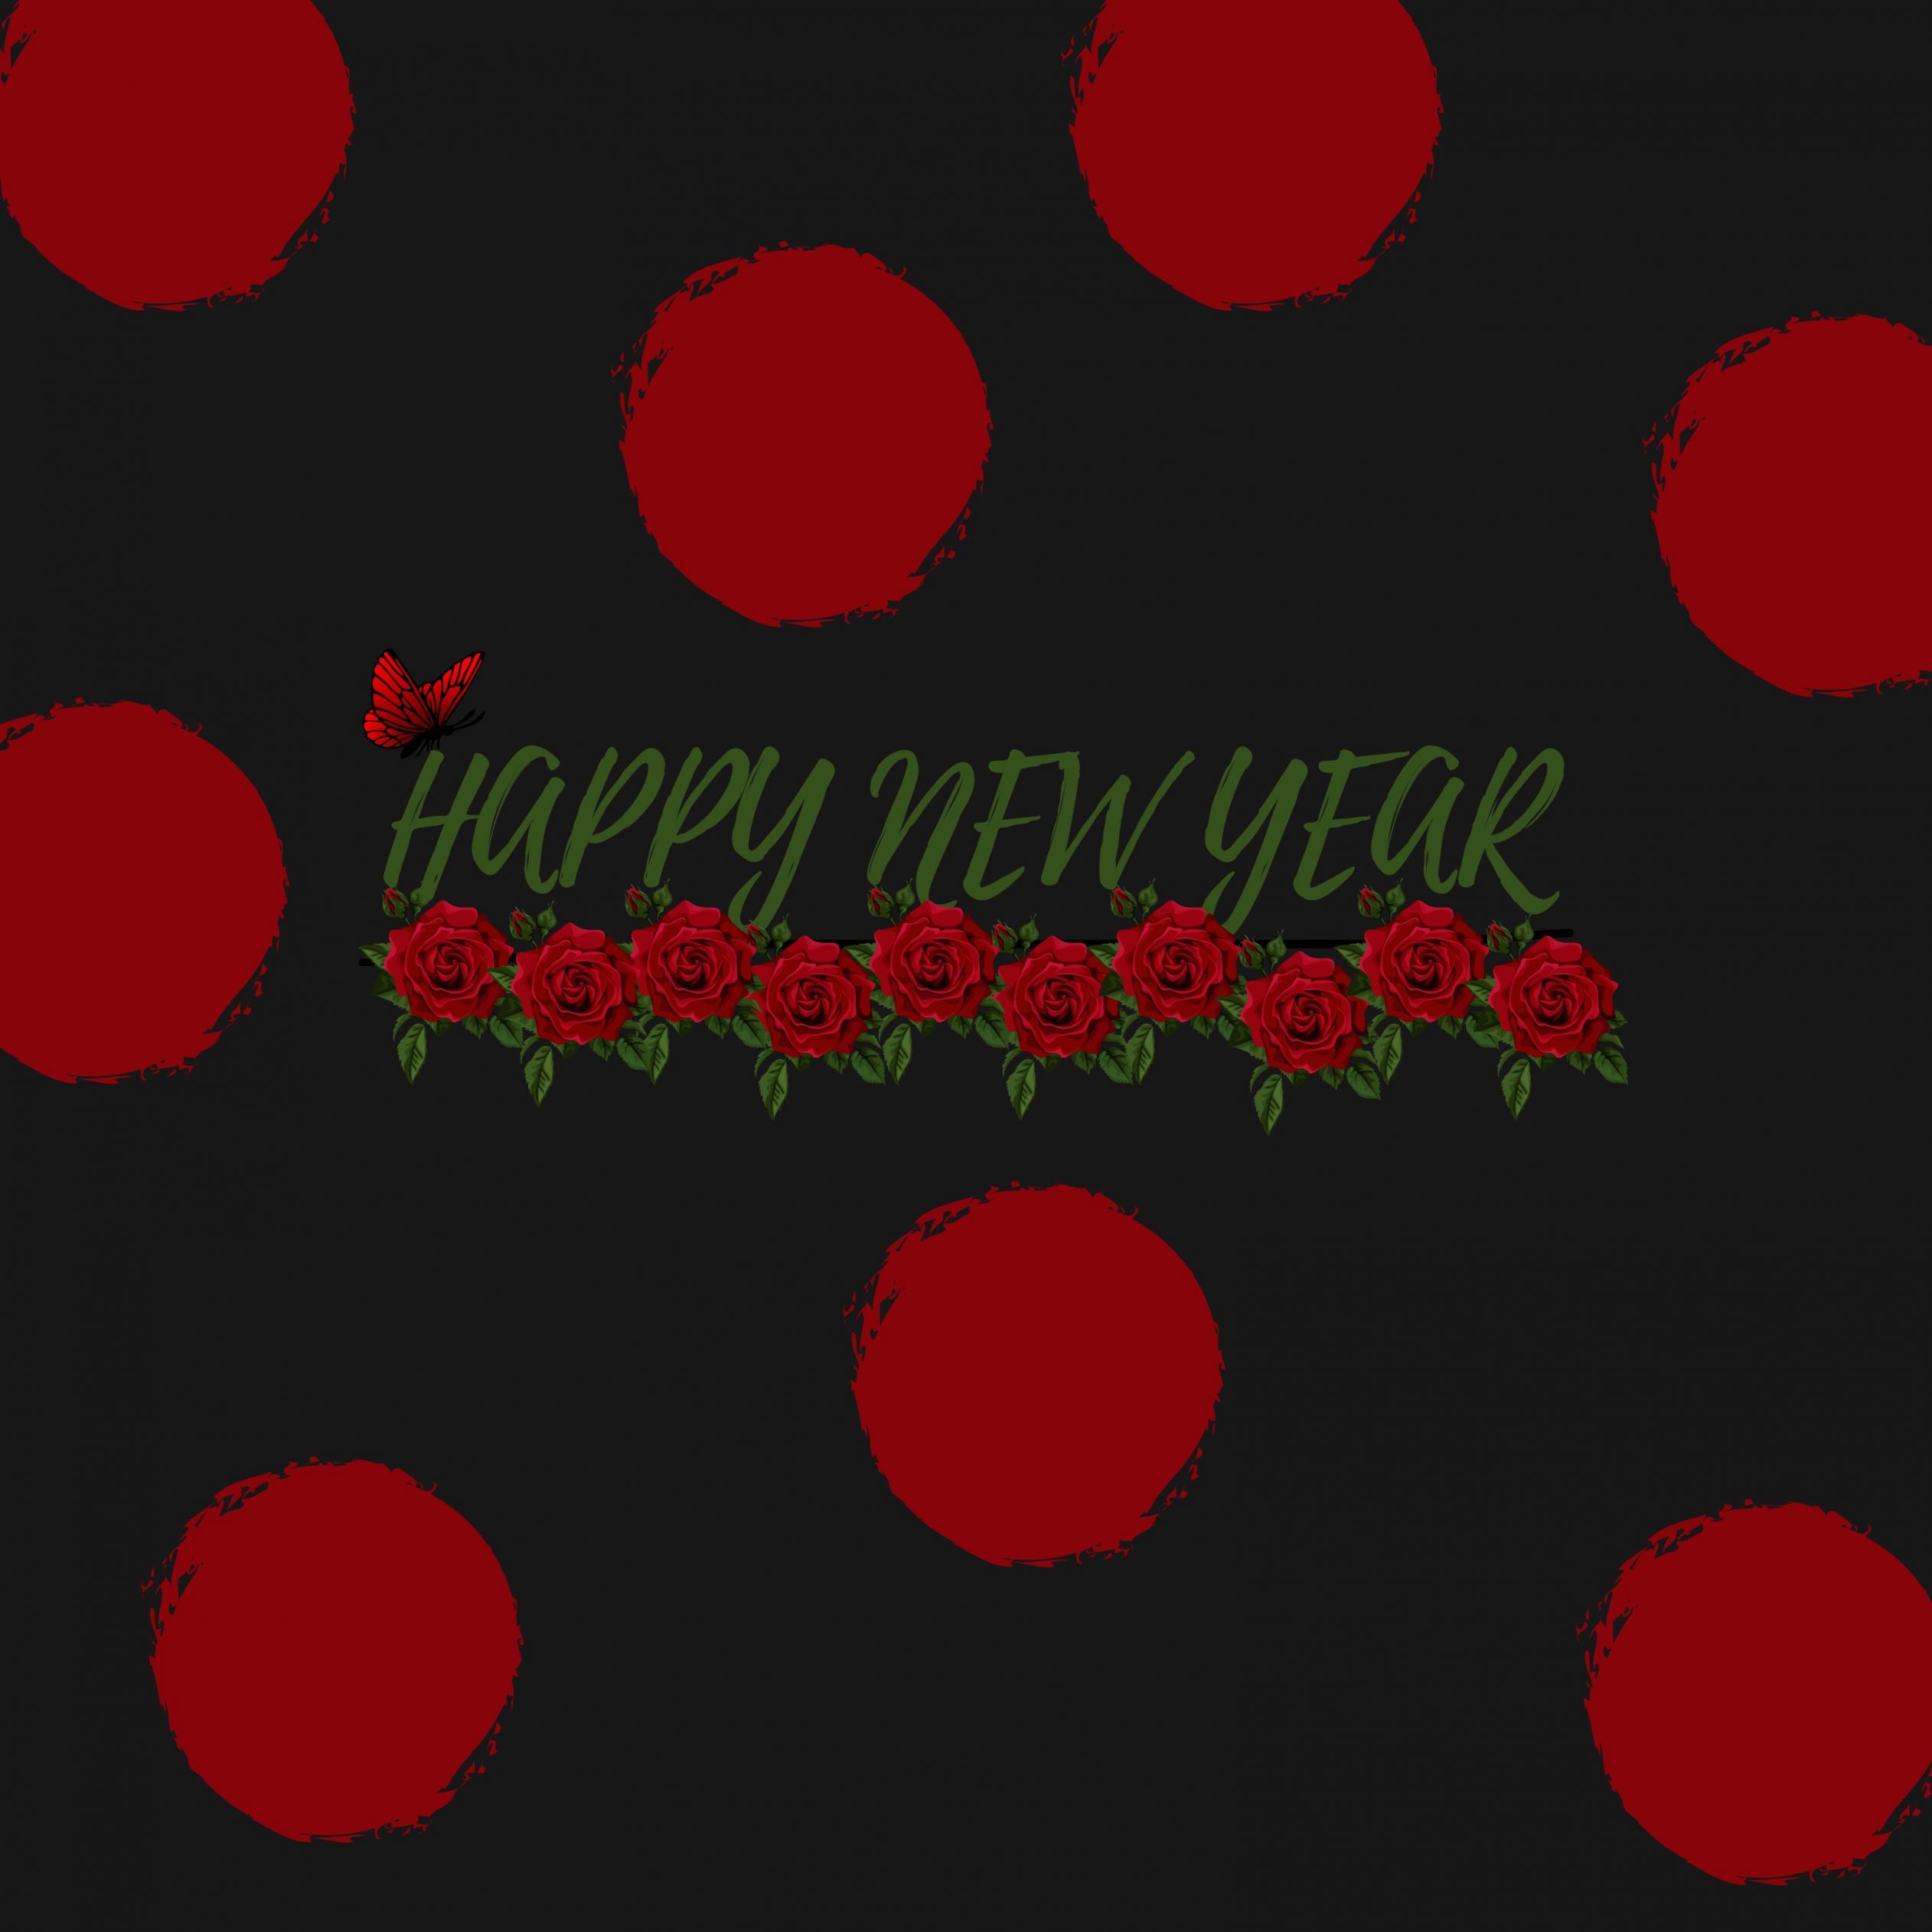 2524x2524 Parallax wallpaper 4k Red Poka Dot New Year Ipad Wallpaper 2524x2524 pixels resolution